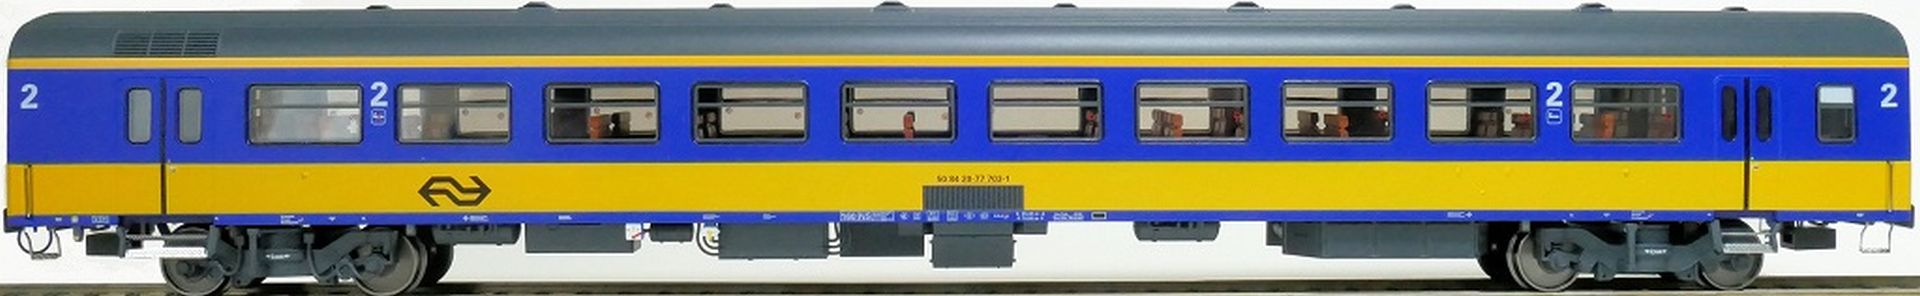 Exact-Train EX11165 - Personenwagen ICR, B, Originalversion, NS, Ep.IV, mit Innenbel. und Figuren